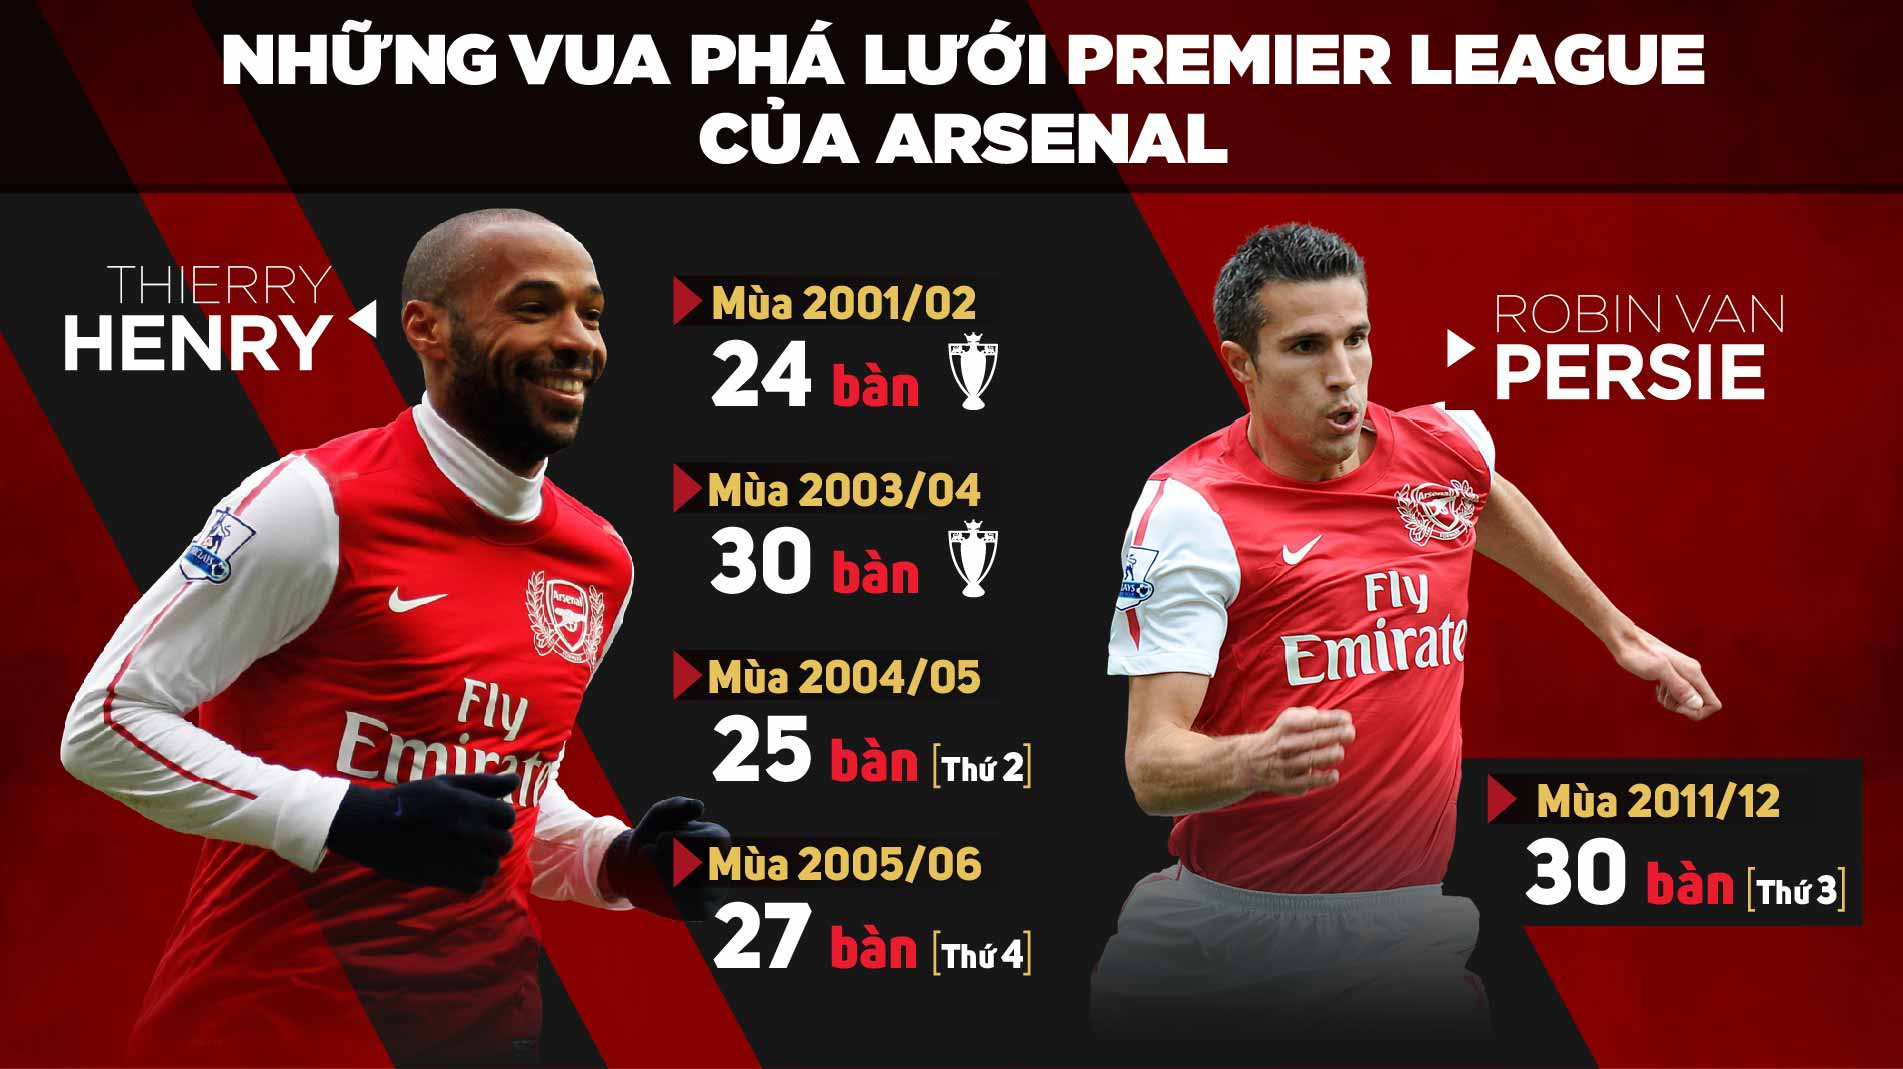 Arsenal chỉ có 2 lần vô địch Premier League khi chân sút của họ đoạt ngôi Vua phá lưới